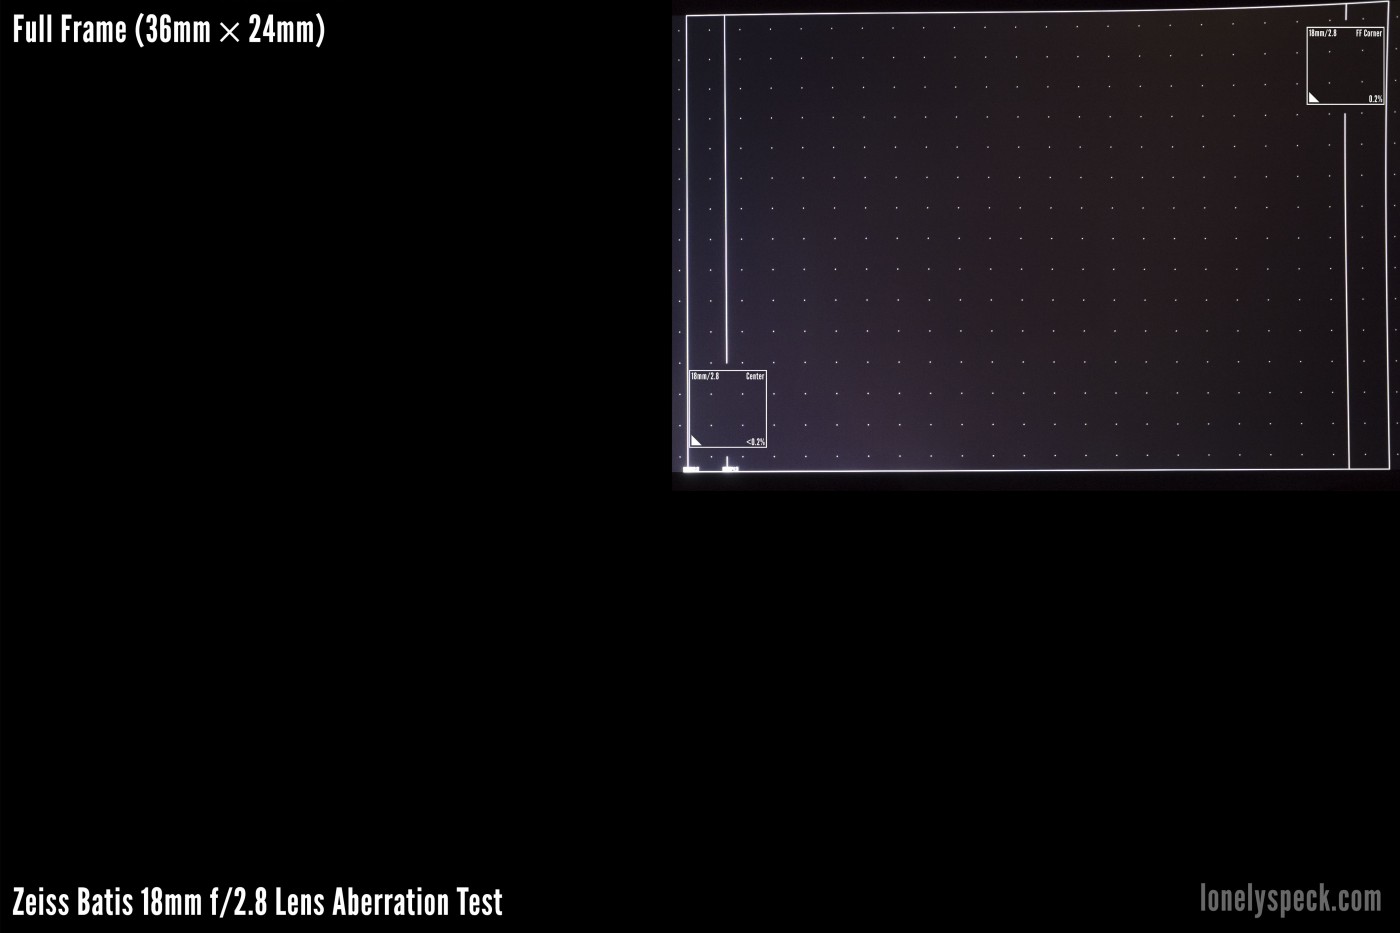 ziess-batis-18mm-aberration-test-full-frame